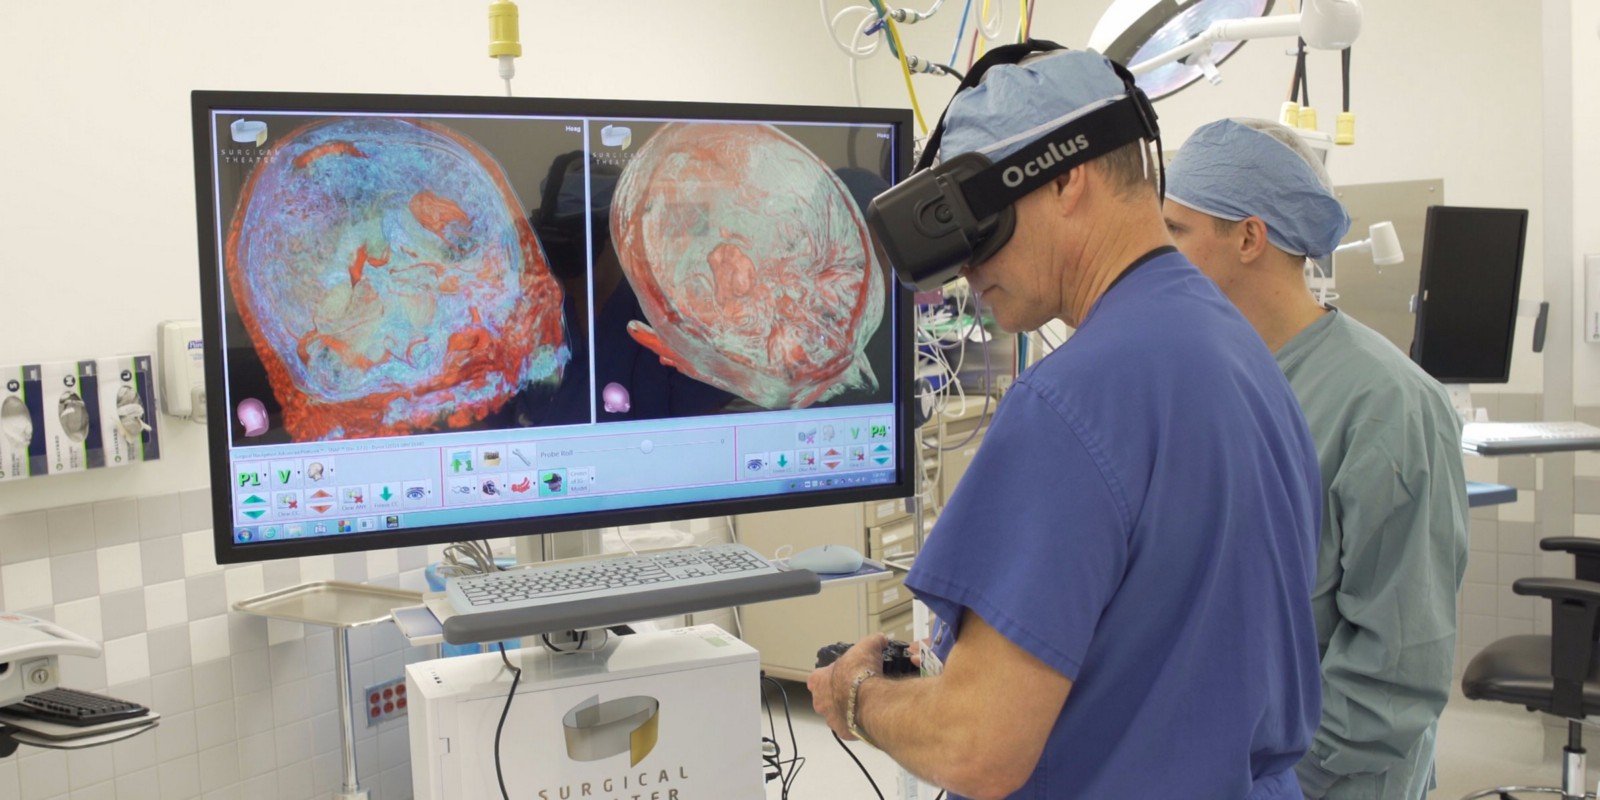 Trong y học, kính thực tế ảo giúp các bác sĩ tương lai có thể mường tượng rõ ràng hơn về công việc